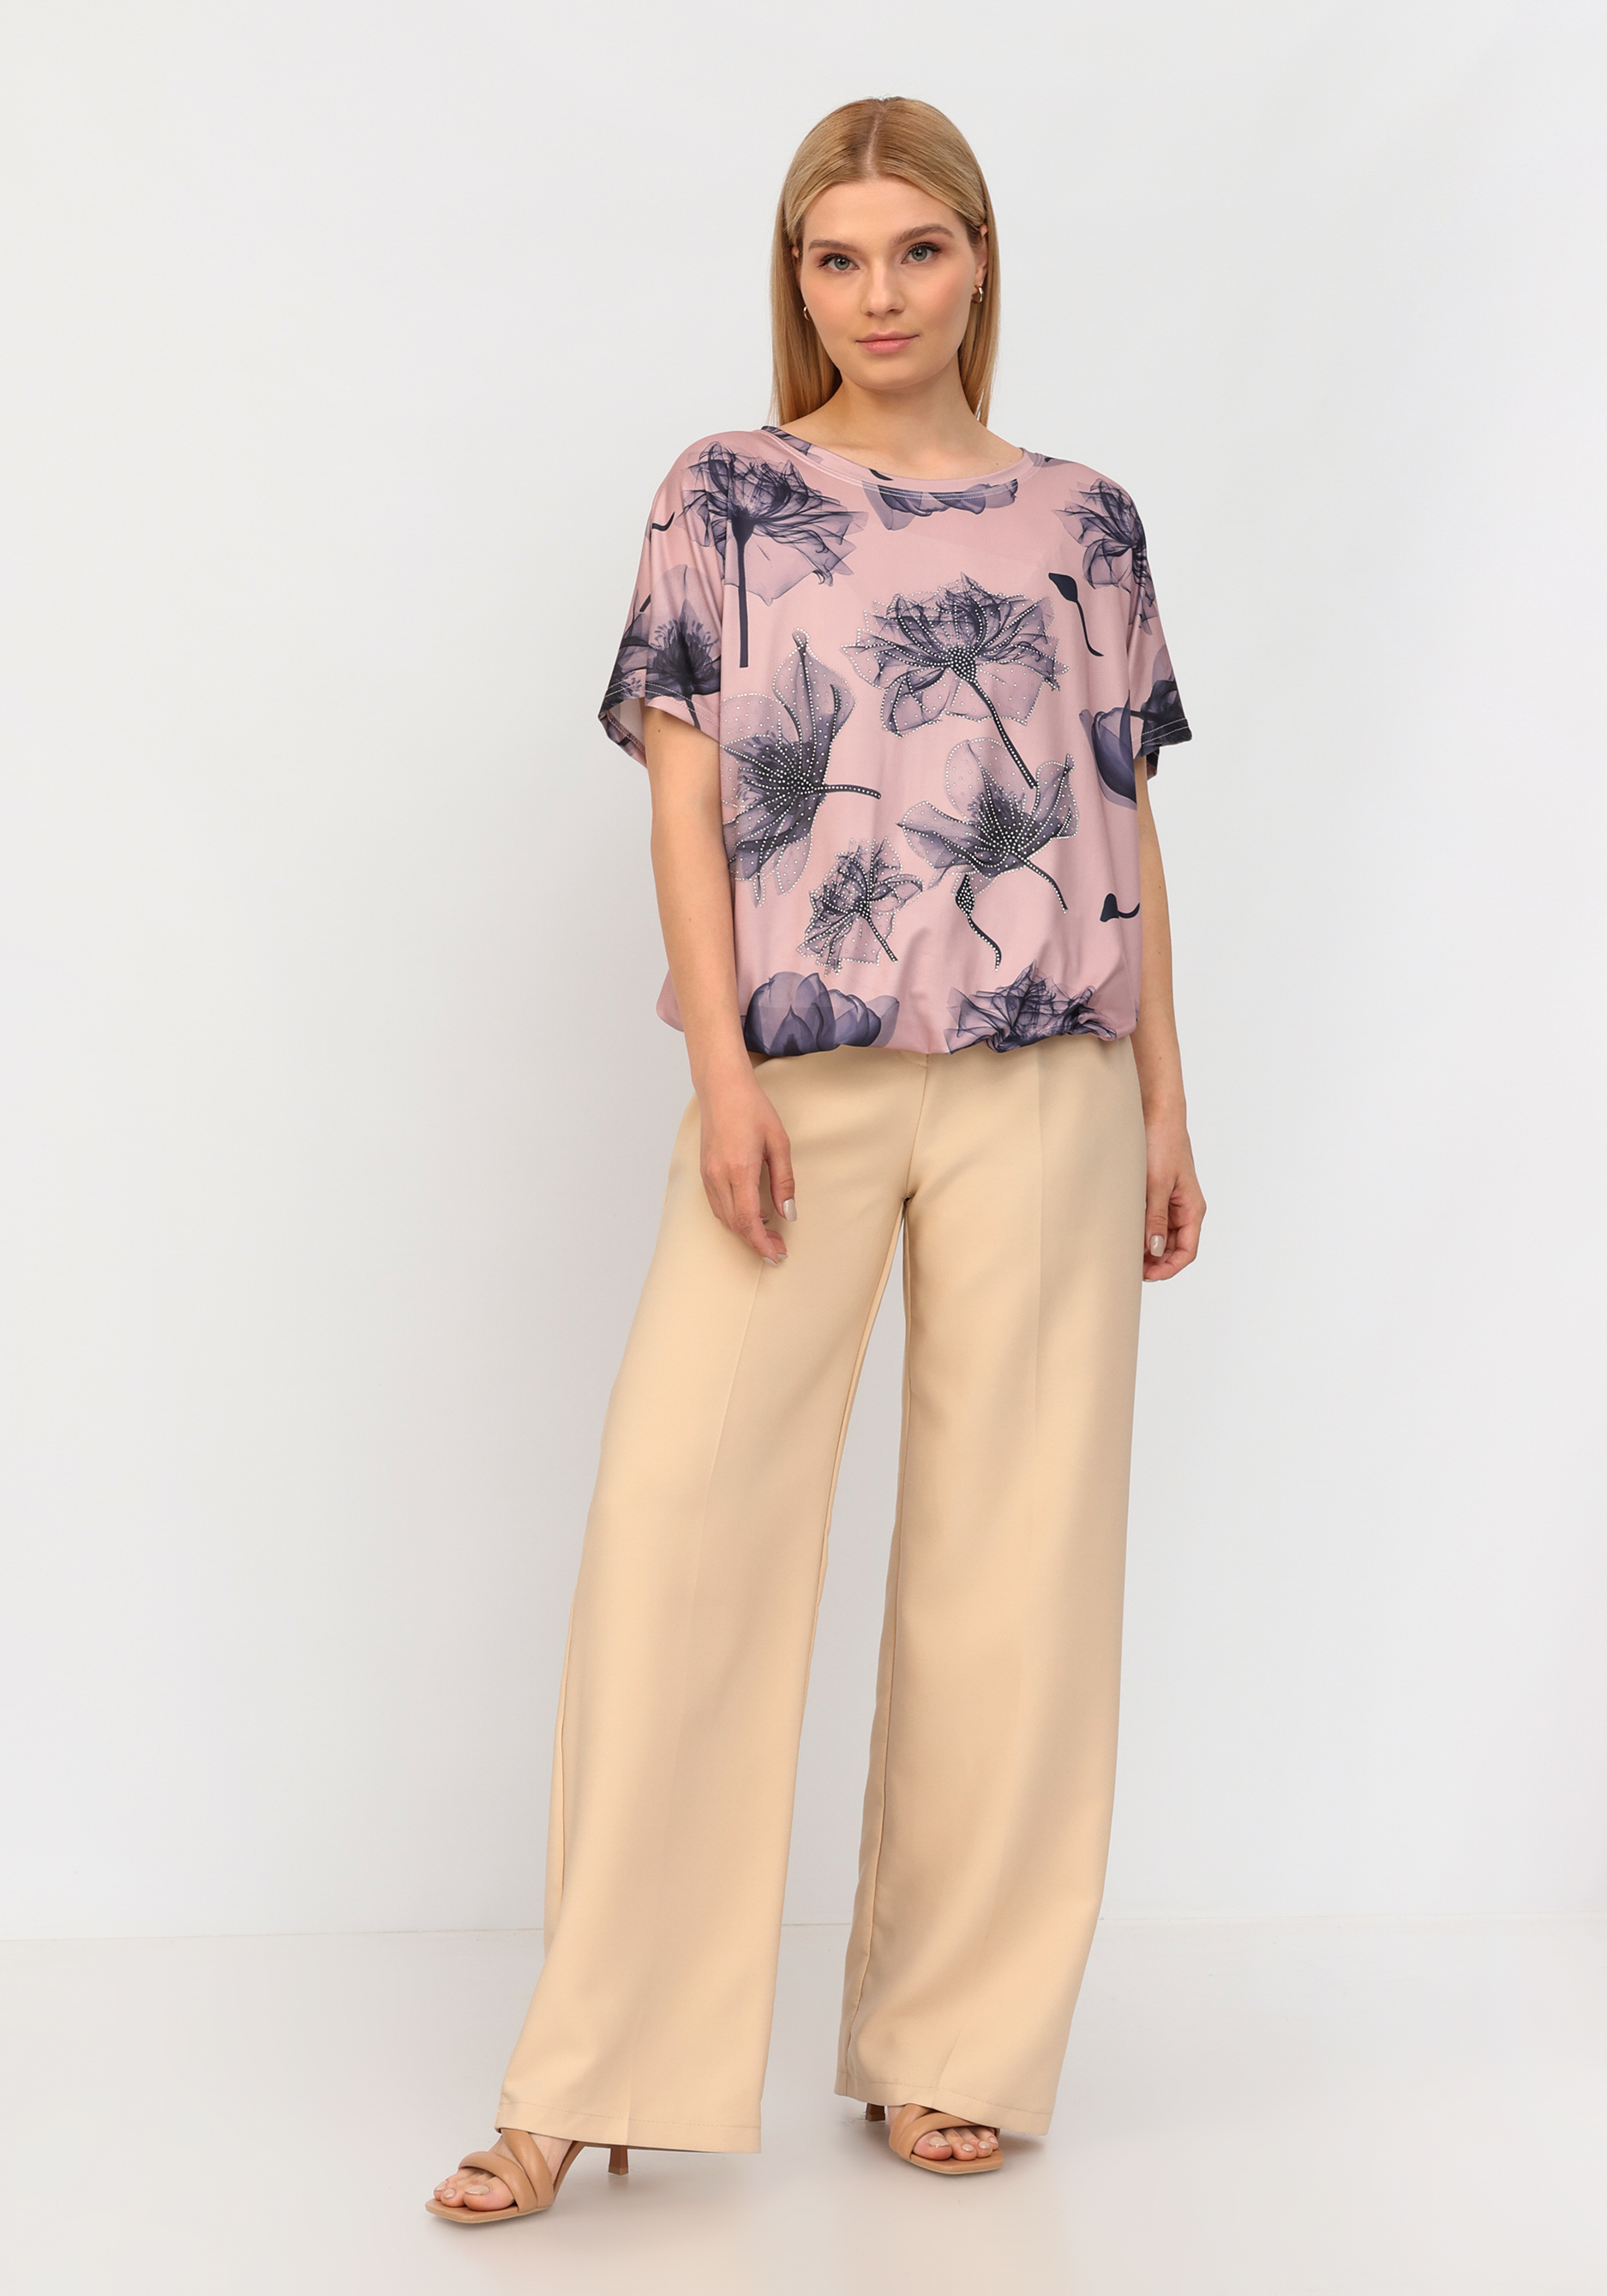 Блуза со стразами и цветочным принтом No name, размер 52-54 - фото 2